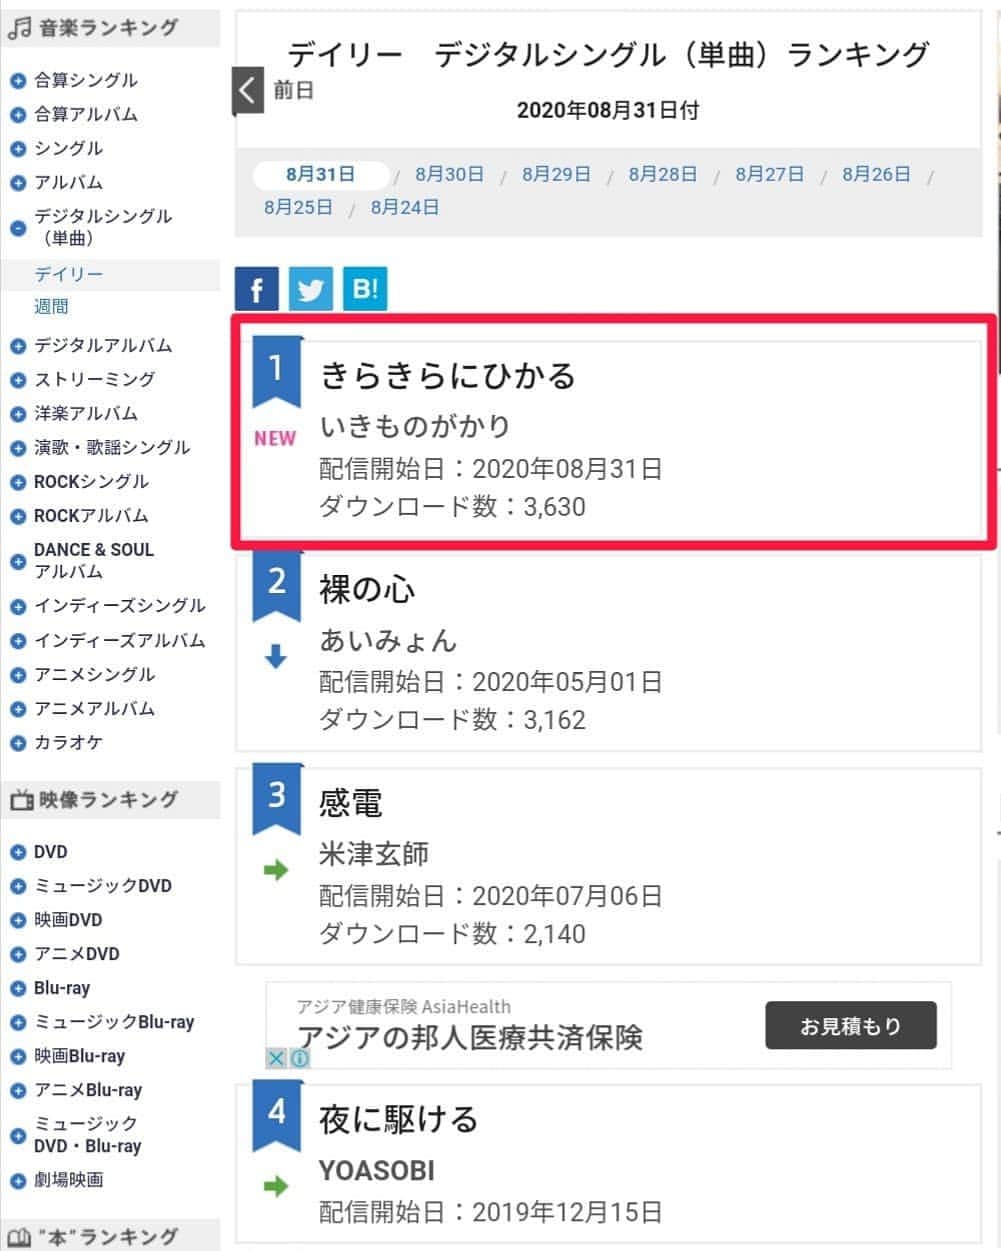 いきものがかりのインスタグラム：「【『きらきらにひかる』配信デイリー初登場1位】  いきものがかりの新曲『きらきらにひかる』が、配信開始日の8月31日付オリコンデイリーデジタルシングルランキングで初登場1位にランクイン。DL数3,630。  "Kira kira ni hikaru," a new song by Ikimonogakari, was ranked number one in the Oricon Daily Digital Single Ranking on August 31st, the first day of distribution."3,630 DLs.  https://www.oricon.co.jp/rank/dis/d/2020-08-31/  #いきものがかり #Ikimonogakari」